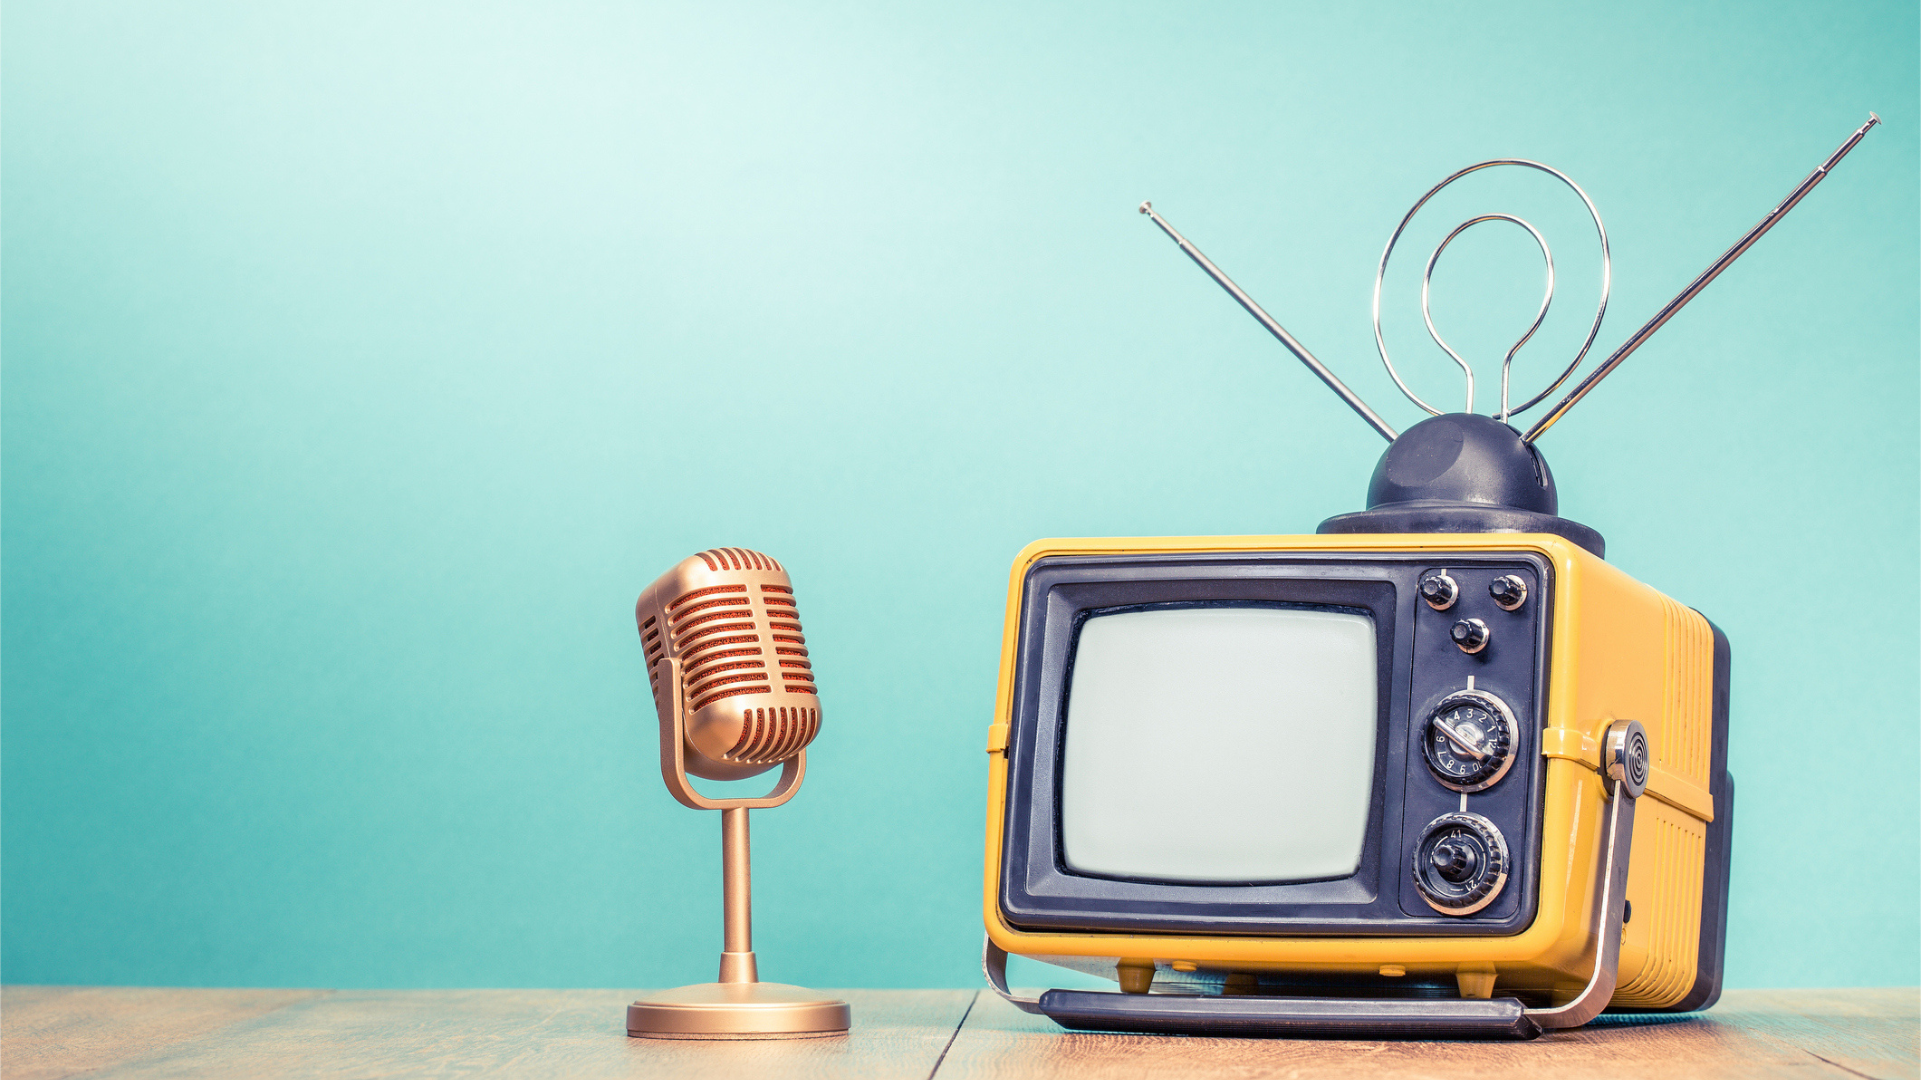 Nesta imagem podemos ver uma televisão analógica e um microfonr, que possivelmente faz alusãi a publicidade na TV aberta.